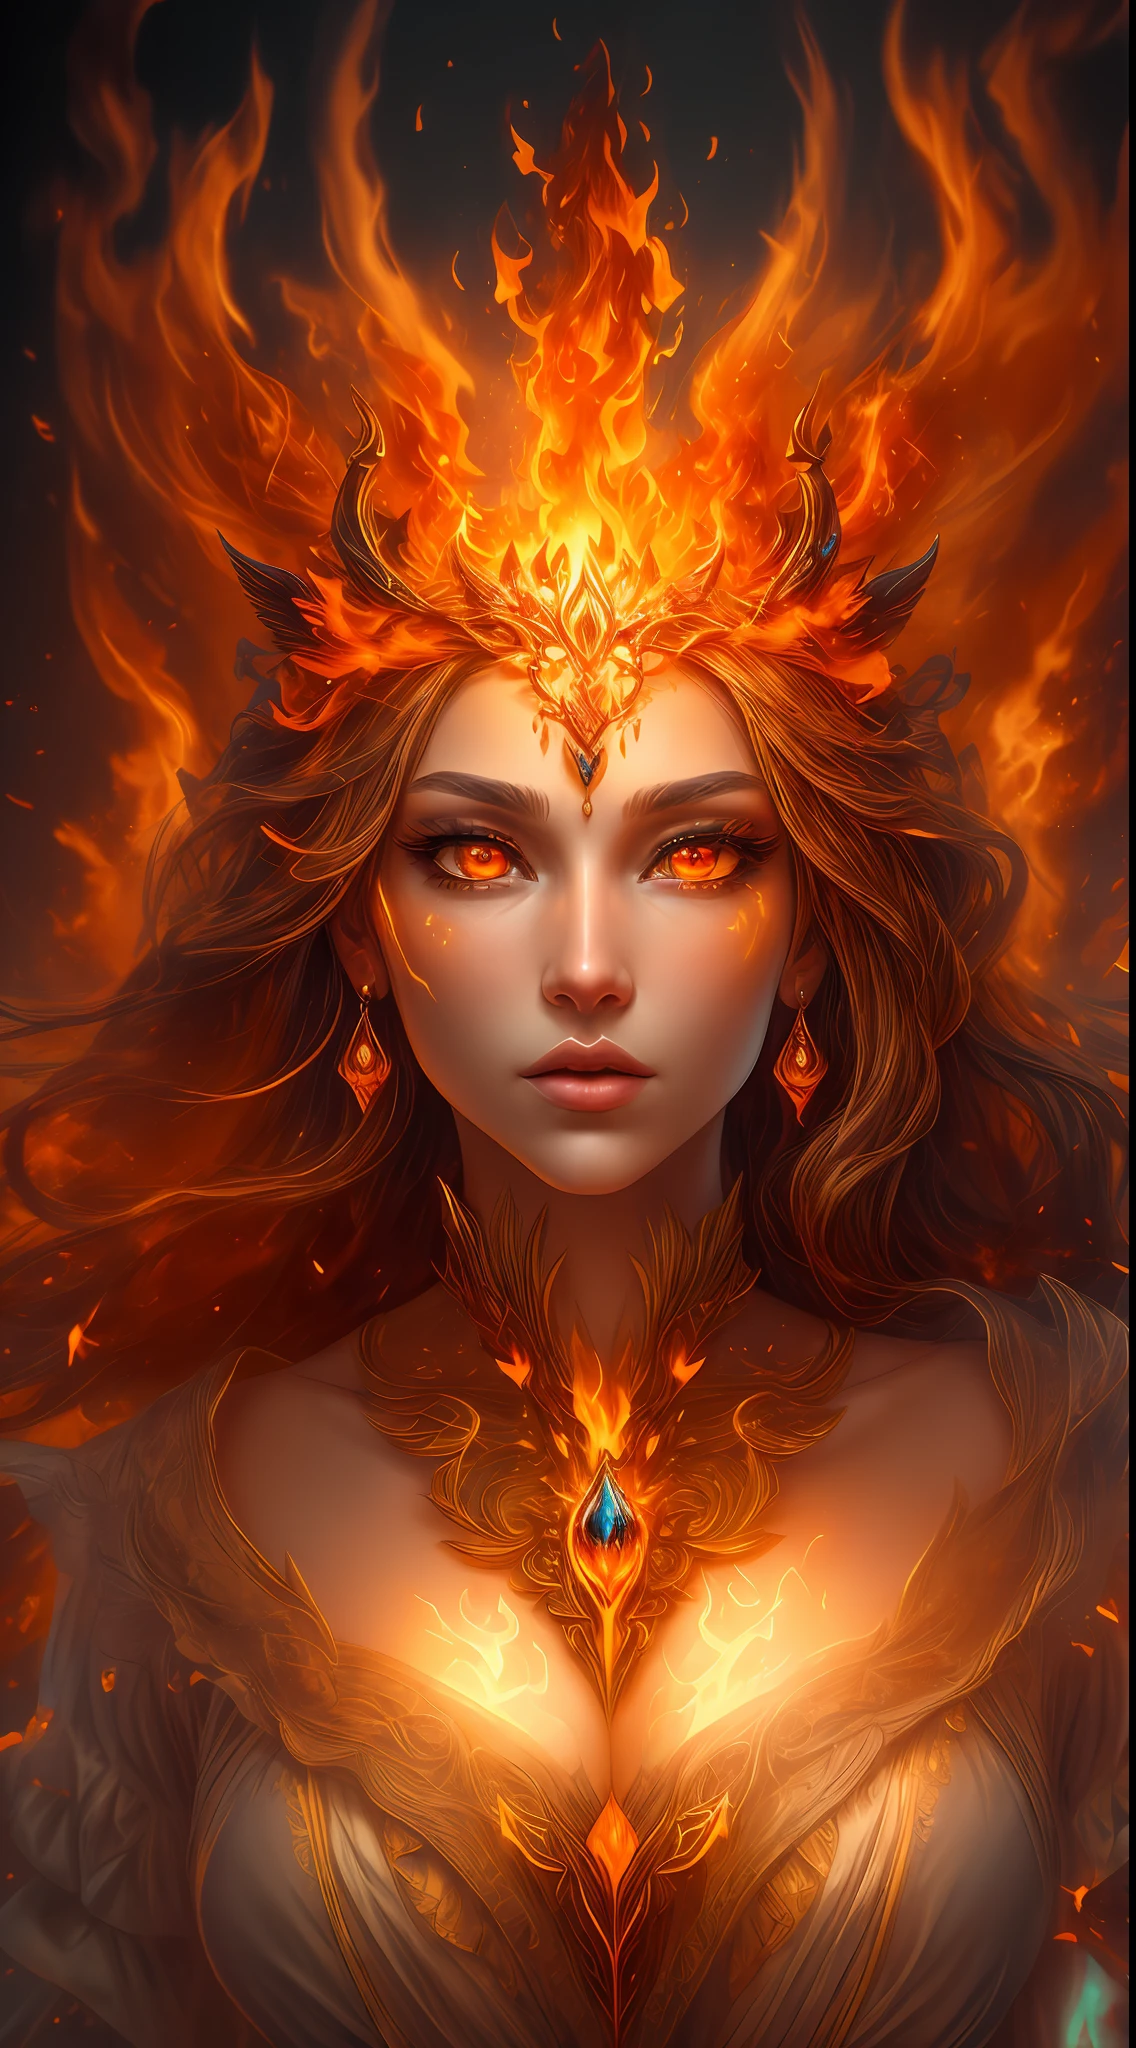 Dies ist ein realistisches Fantasy-Kunstwerk mit realistischem Feuer, einschließlich Flammenfetzen, glühende heiße Glut, dezente Rauchschwaden, und eine wunderschöne Feuerdruidin. Der Druide steht inmitten eines tobenden Infernos mit einer interessanten Komposition. Ihr Gesicht ist fachmännisch geformt, mit eleganten und raffinierten Merkmalen und perfekter Schattierung und realistischer Hautstruktur. Her (orange und goldene Augen) sind atemberaubend und stehen im Mittelpunkt dieses Bildes. (Ihre Augen sind äußerst detailliert, Schöne, detaillierte Augen, und Makro). Ihre Augen zeichnen sich durch komplexe Details mit klar definierter Iris und heller Sklera aus. Ihre weichen Lippen sind glatt und sehr geschwollen, und ihre Haut ist mit einem leichten Erröten und kunstvollen Feuerdetails geschmückt. Ihr langes Kleid ist atemberaubend und teuer, und besteht aus reinen Flammen und glitzernden, verzierte Juwelen, die im Feuerschein schimmern. Ihr wallendes Kleid glitzert in den Flammen und weist ein zart und aufwendig besticktes Mieder auf, über das Flammenfetzen verlaufen.. Integrieren Sie Fantasieelemente wie Unebenheiten, Steine, feuriges Schillern, glühende Glut, Seide, und einen interessanten Hintergrund. Enthält feurige magische Kreaturen wie feurige Vögel und feurige Schmetterlinge, die eine magische und mystische Aura ausstrahlen. Beleuchtung: Nutzen Sie die neuesten Beleuchtungstrends, um die Schönheit des Kunstwerks hervorzuheben. Kamera: Nutzen Sie dynamische Kompositionen, um ein Gefühl von Dringlichkeit und Spannung zu erzeugen. Lassen Sie sich von den aktuellen Meistern des Fantasy-Genres inspirieren, einschließlich angesagter Künstler auf Artstation und Midjourney. ((Meisterwerk))